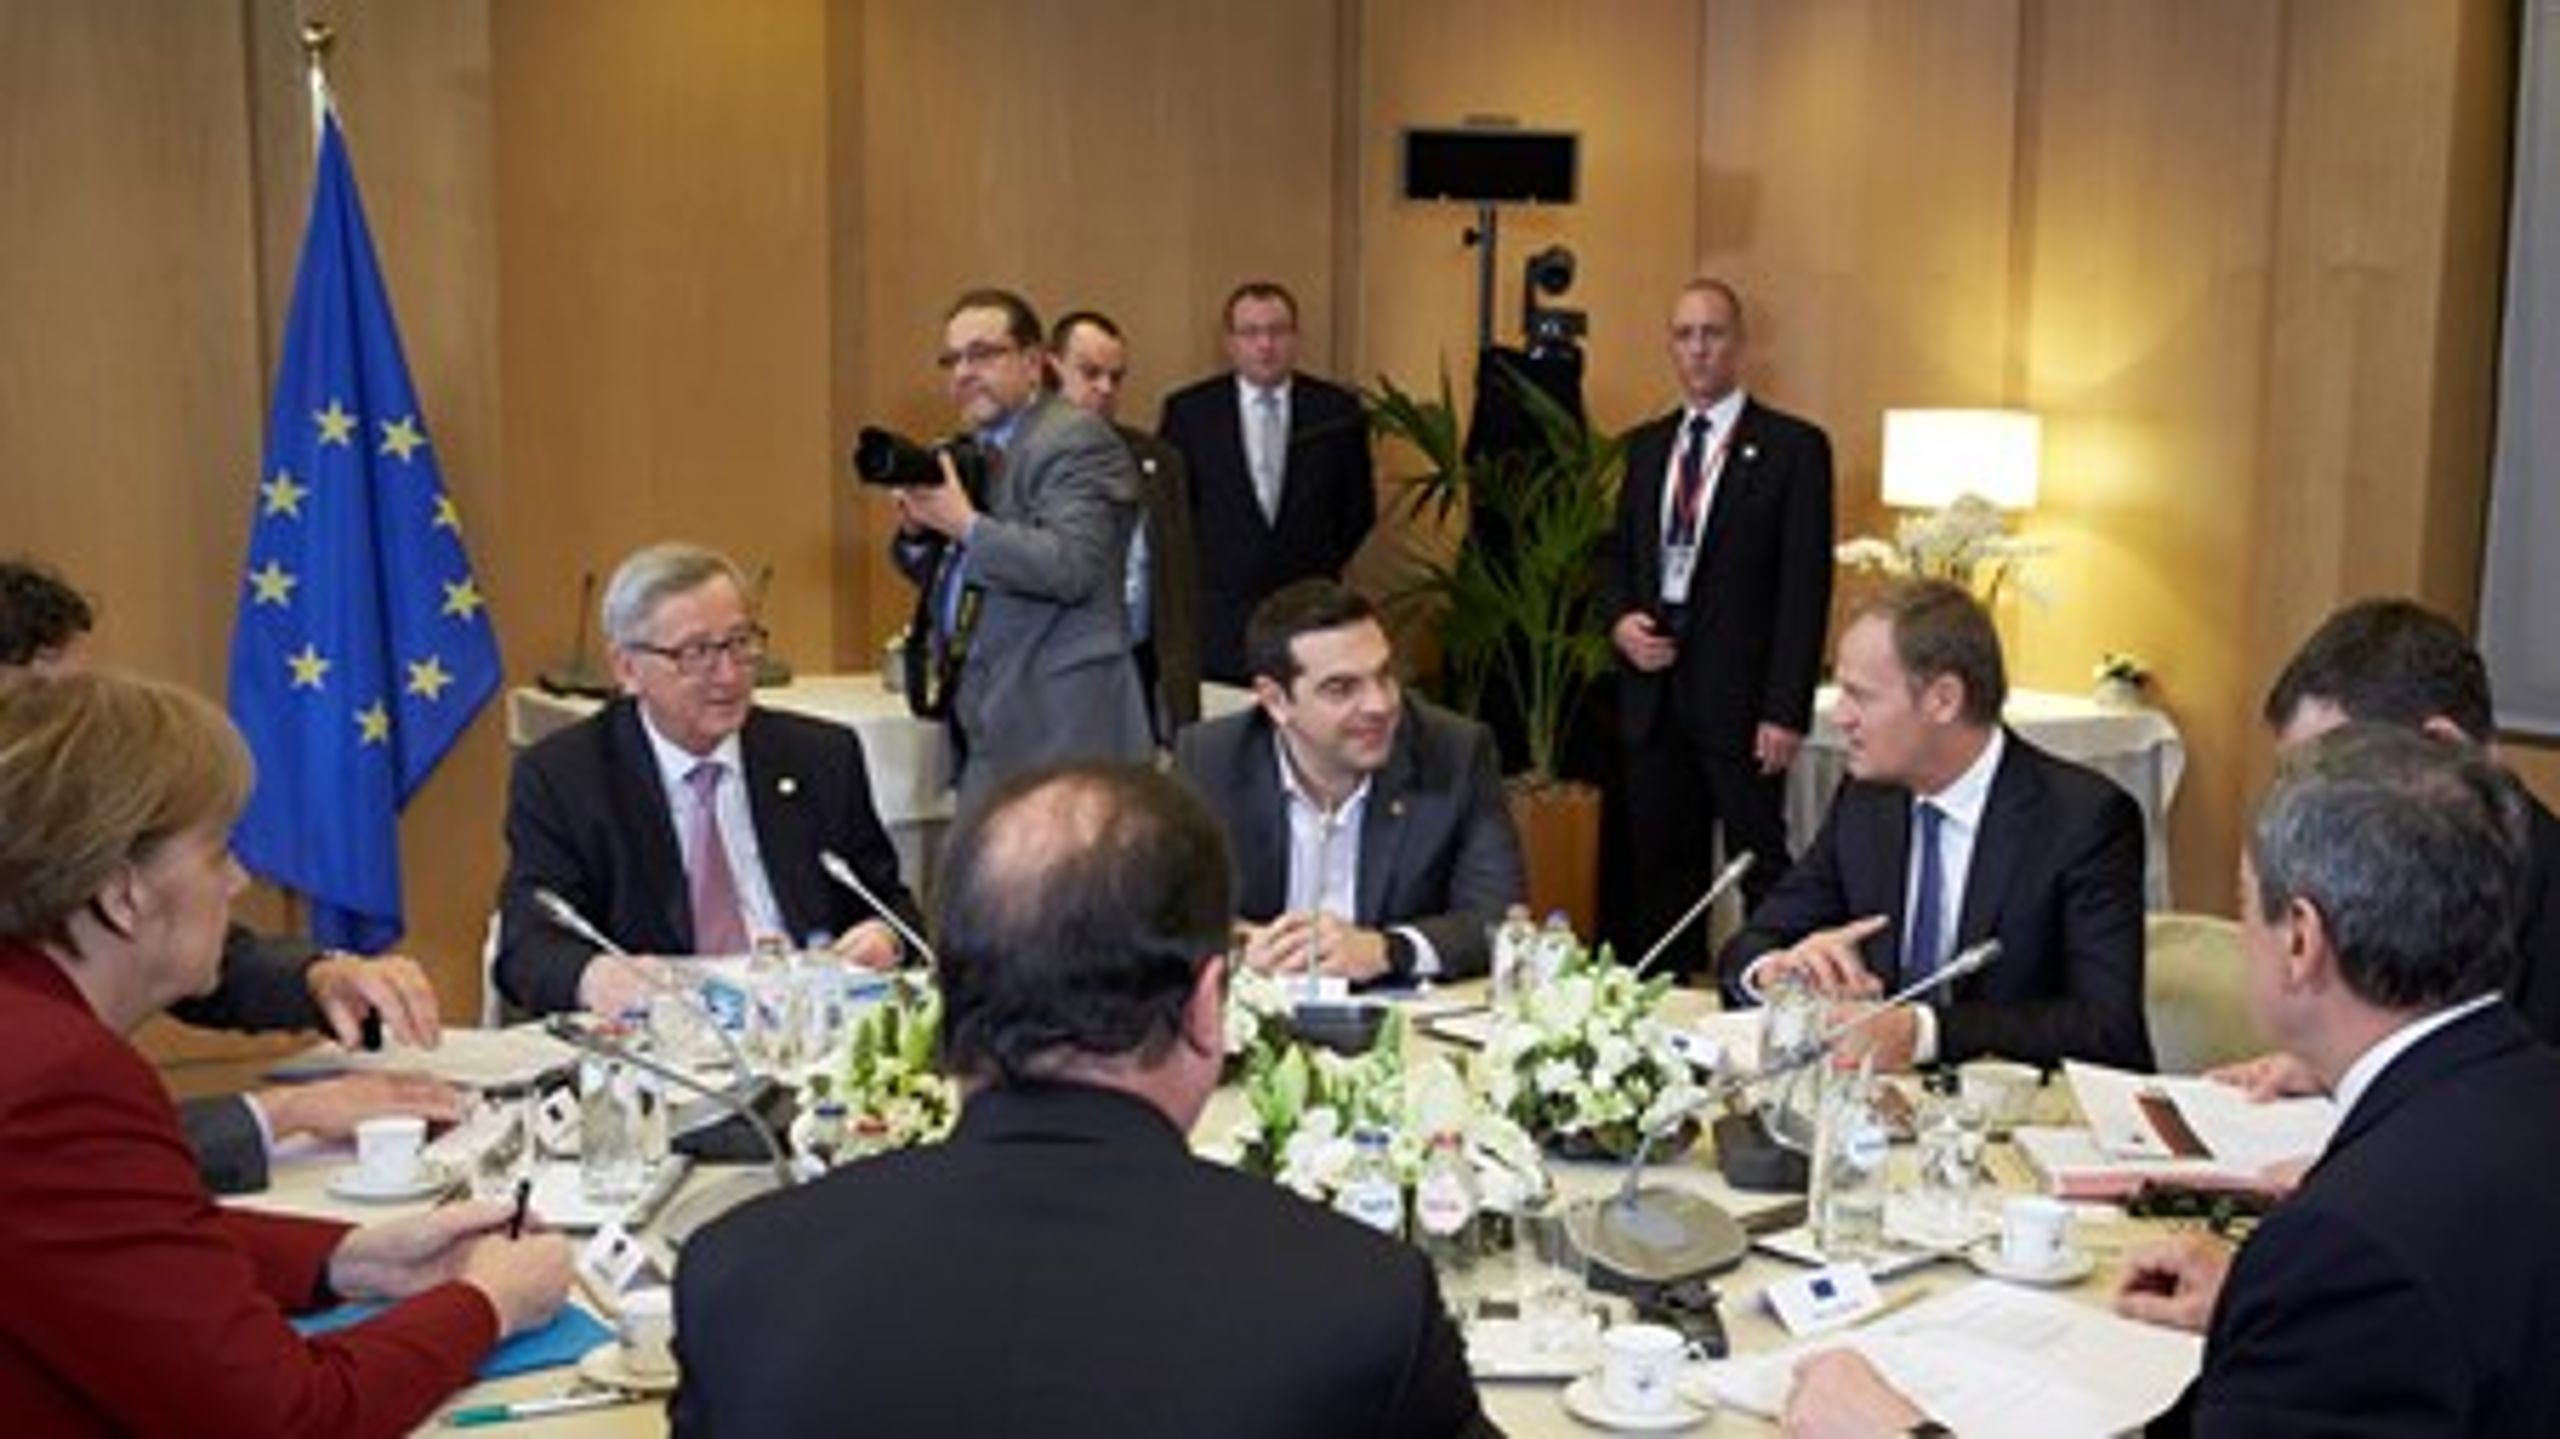 Den græske premierminister Alexis Tsipras holdt krisemøde med den tyske kansler, den franske præsident samt formændene for Kommissionen, Det Europæiske Råd, Eurogruppen og Den Europæiske Centralbank. Det har skabt vrede blandt de øvrige EU-lande.